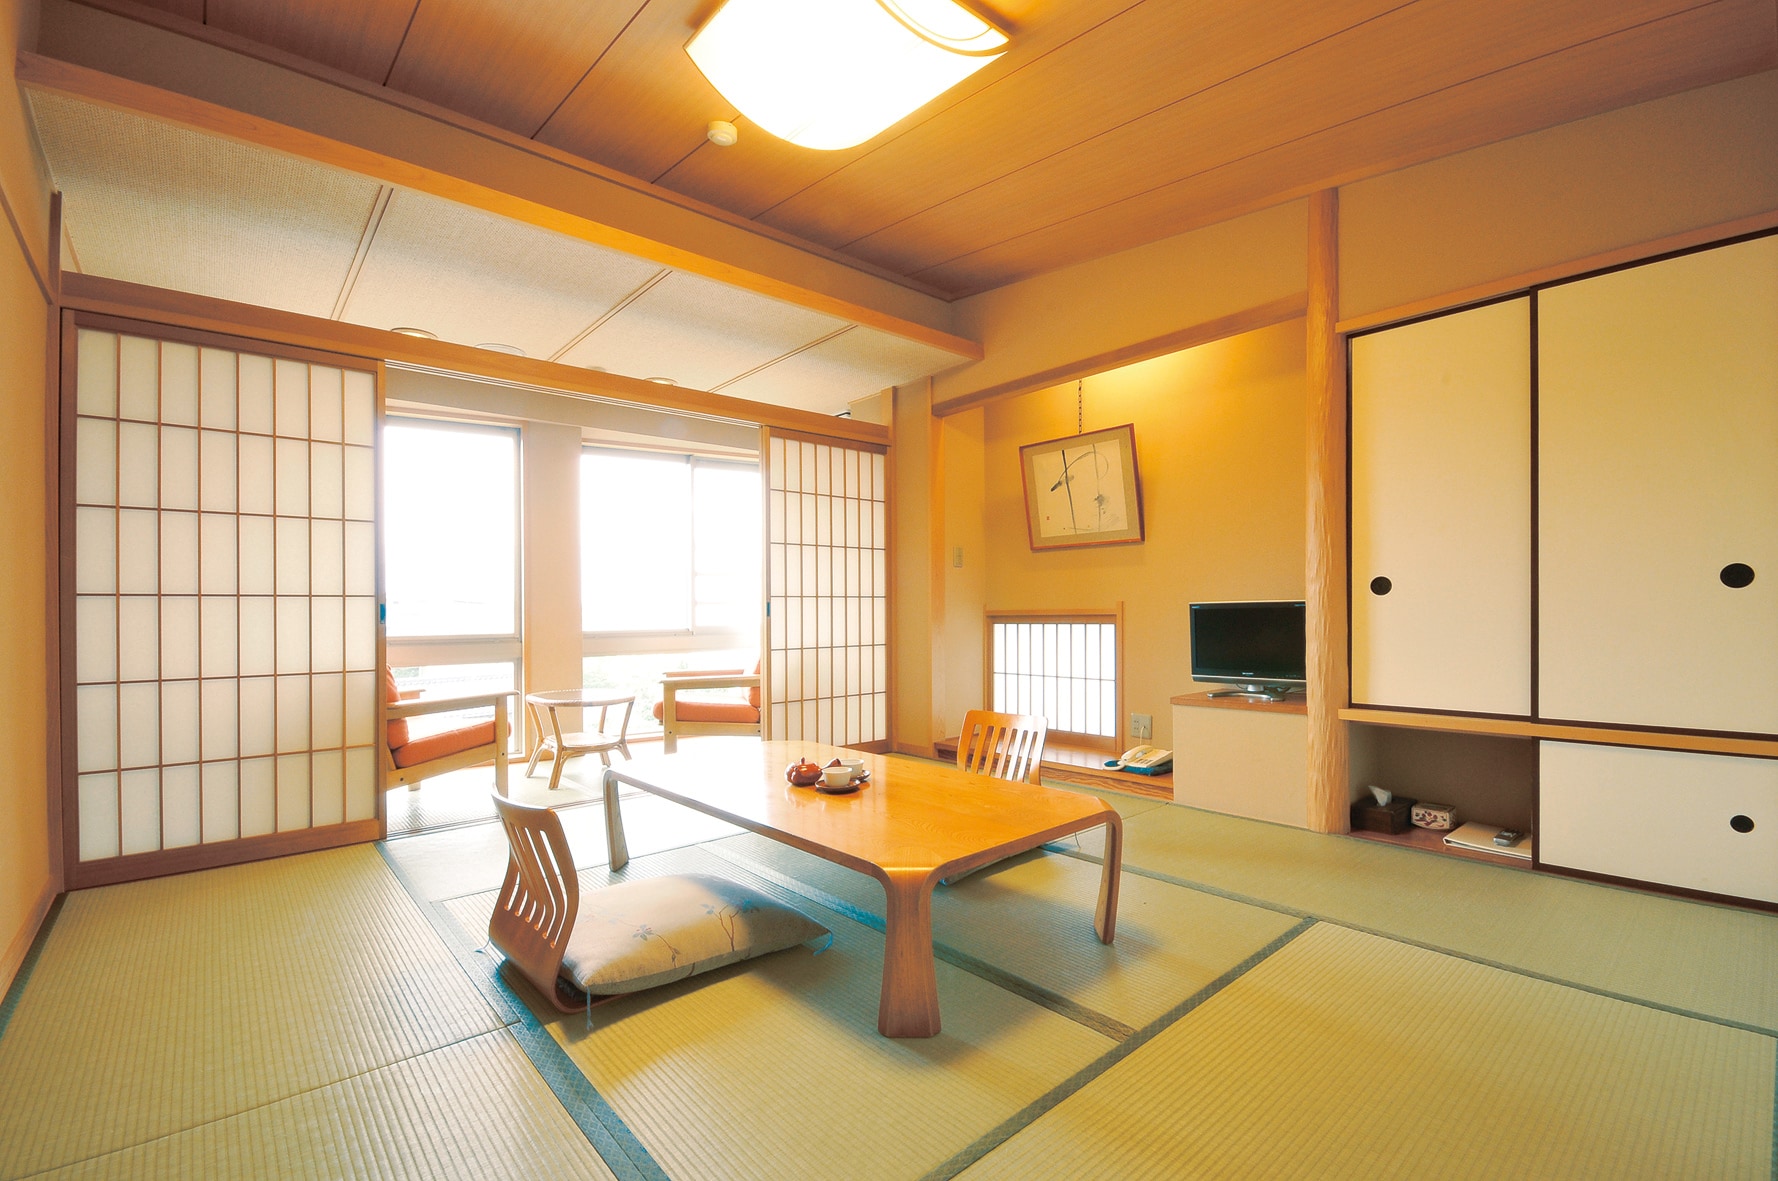 8 kamar bergaya Jepang tatami (gambar)